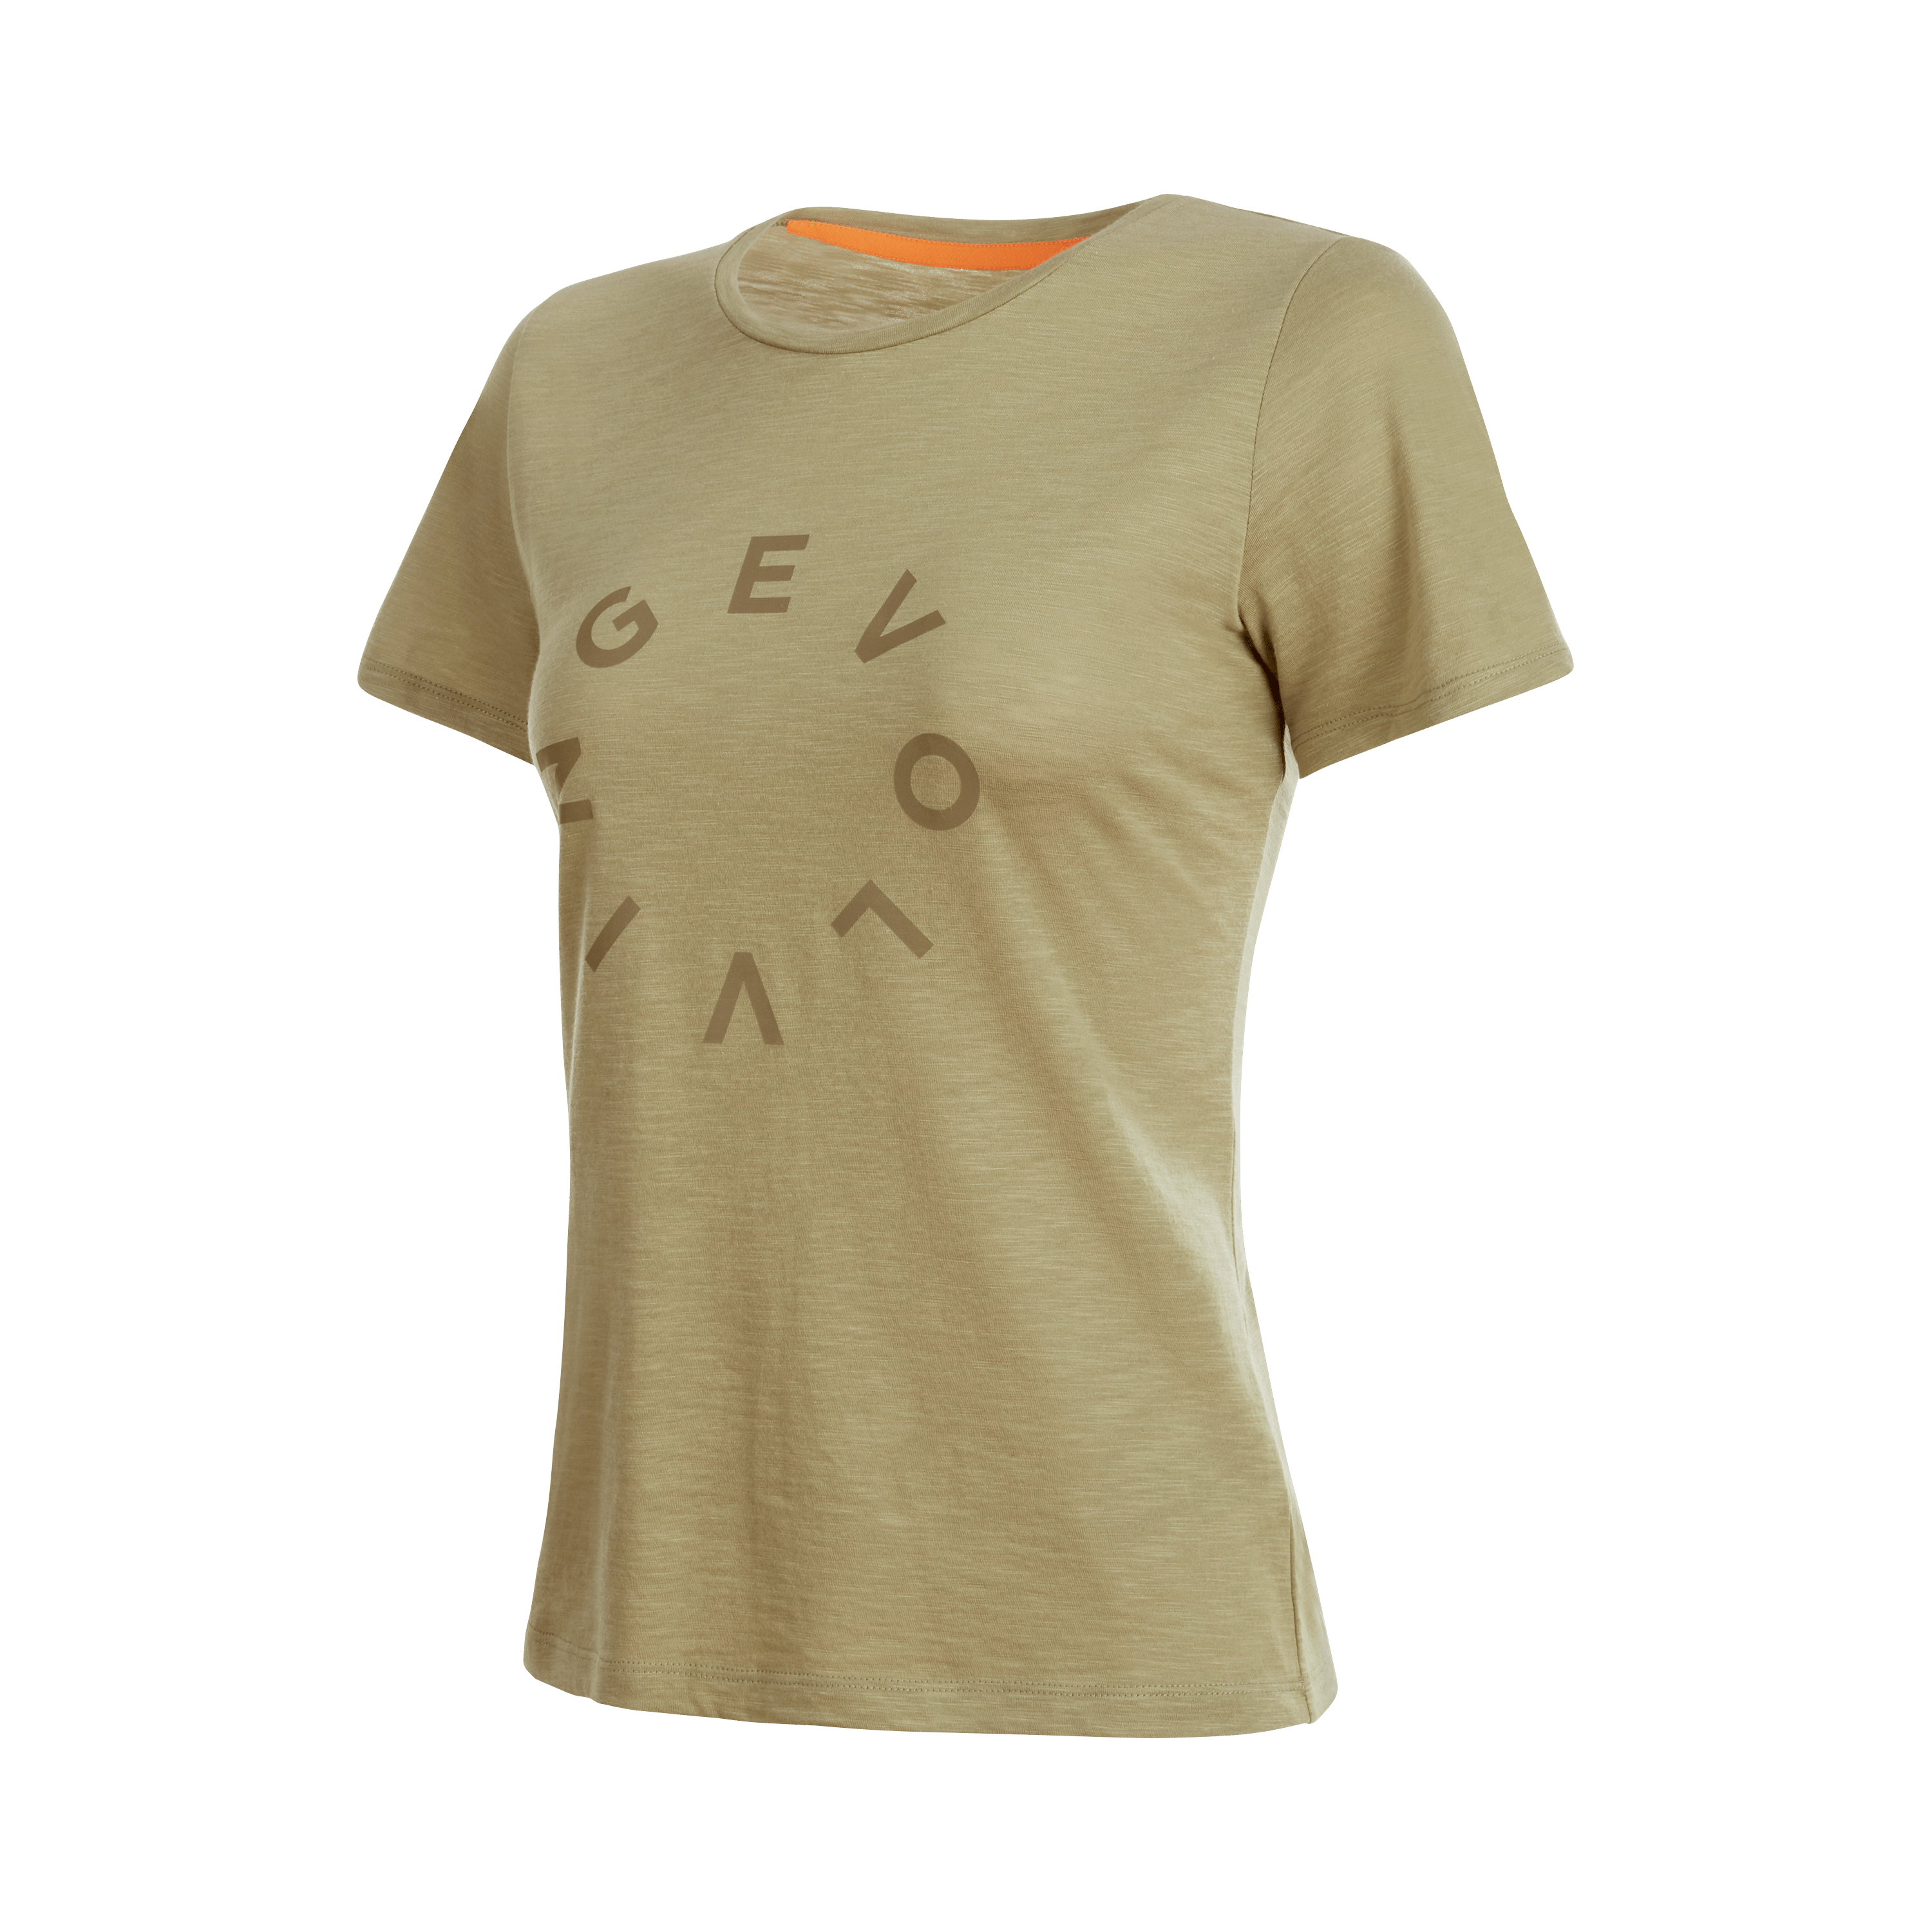 Teufelsberg T-Shirt Women